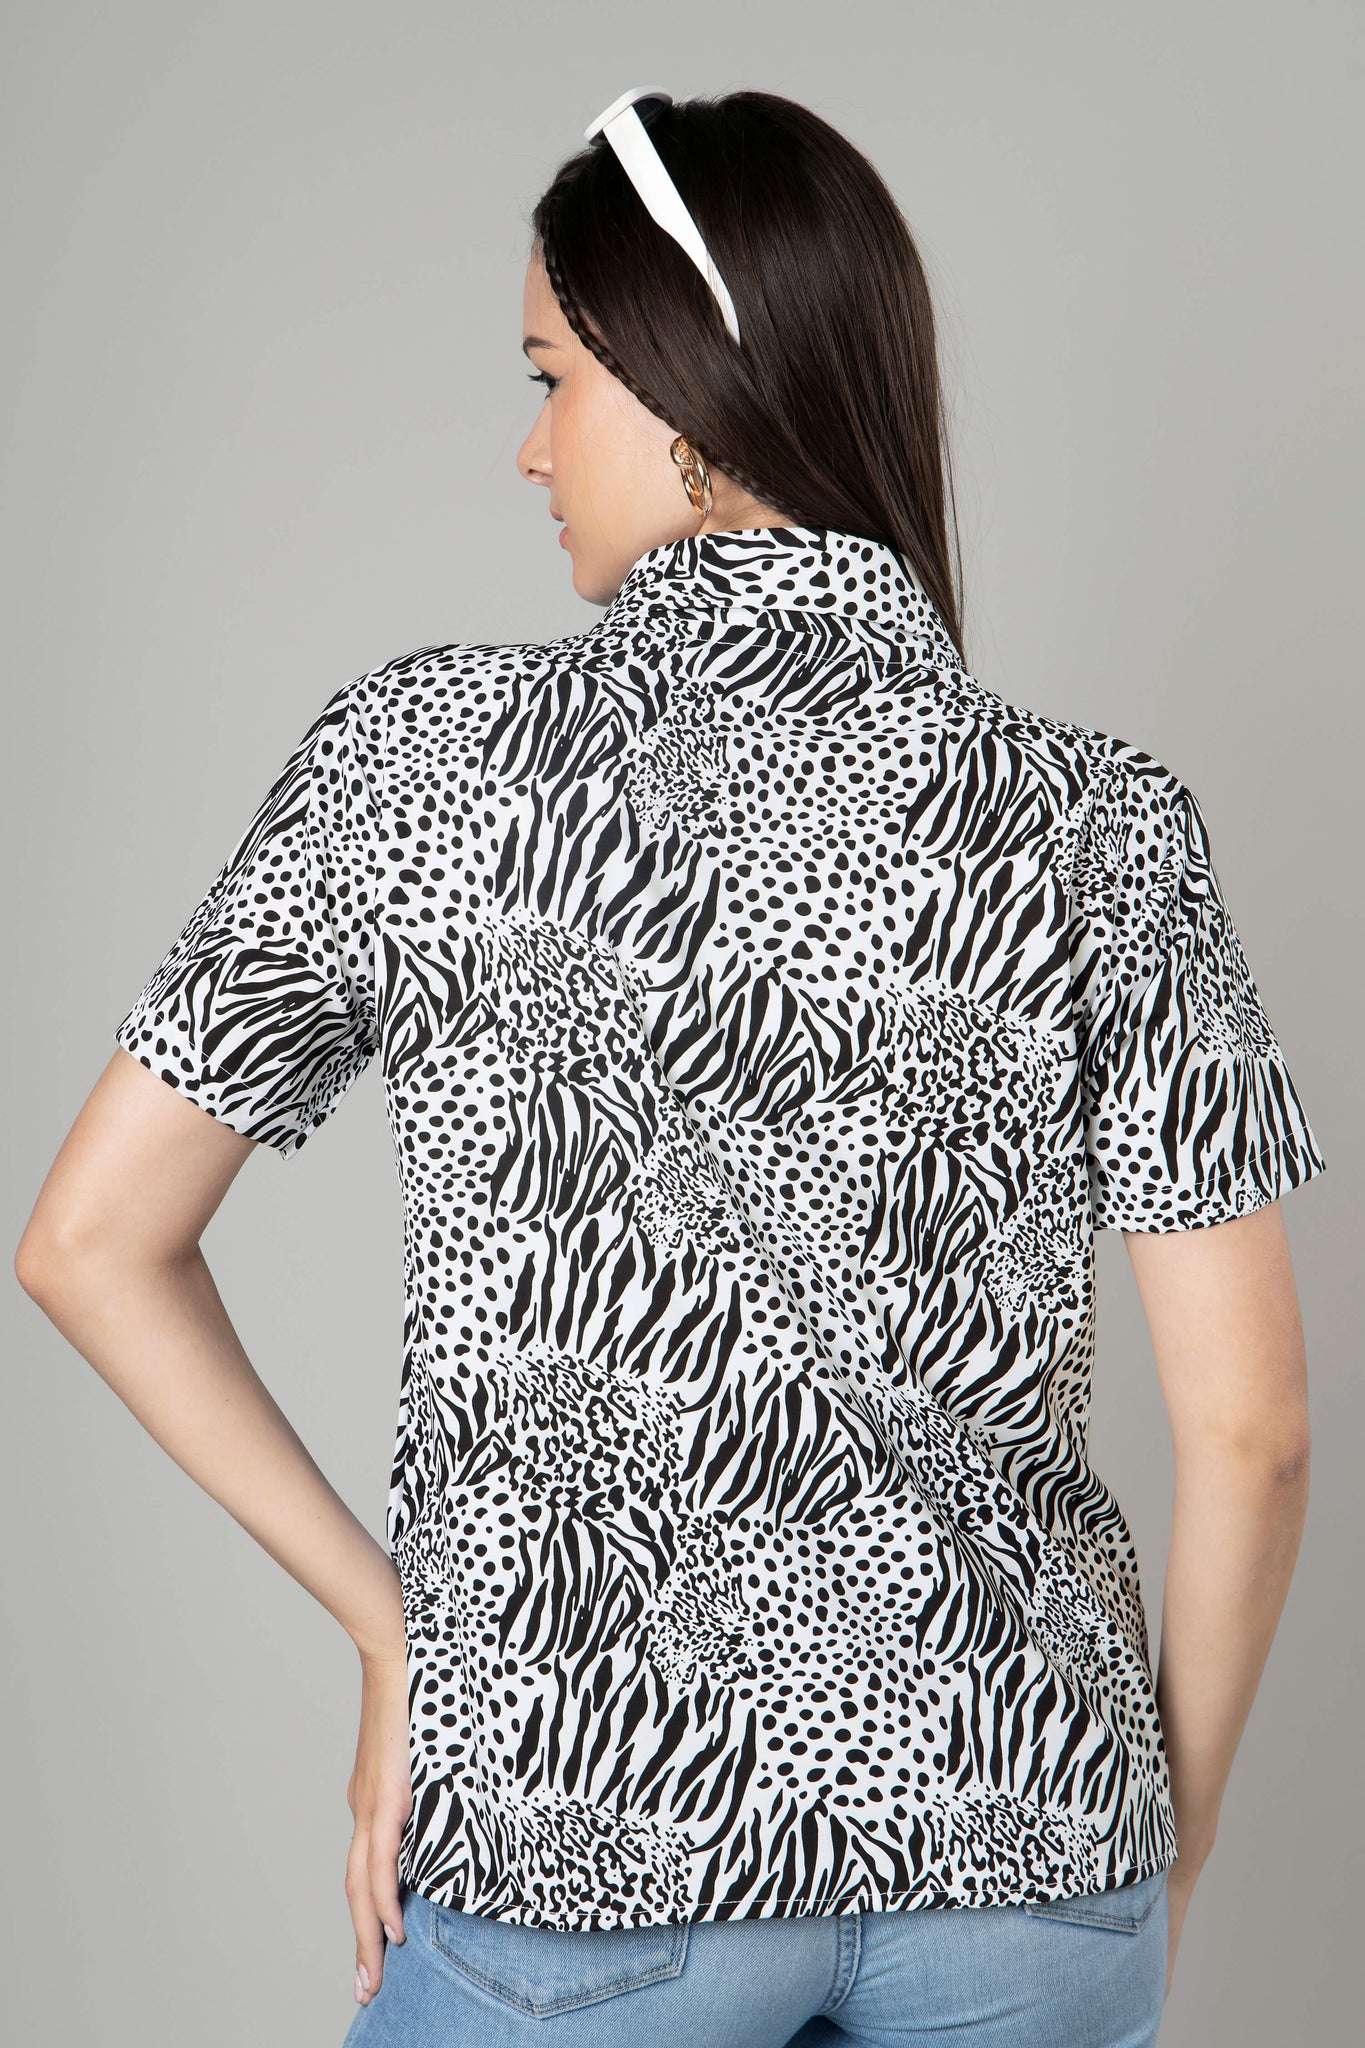 Lovely Zebra Print Shirt For Women